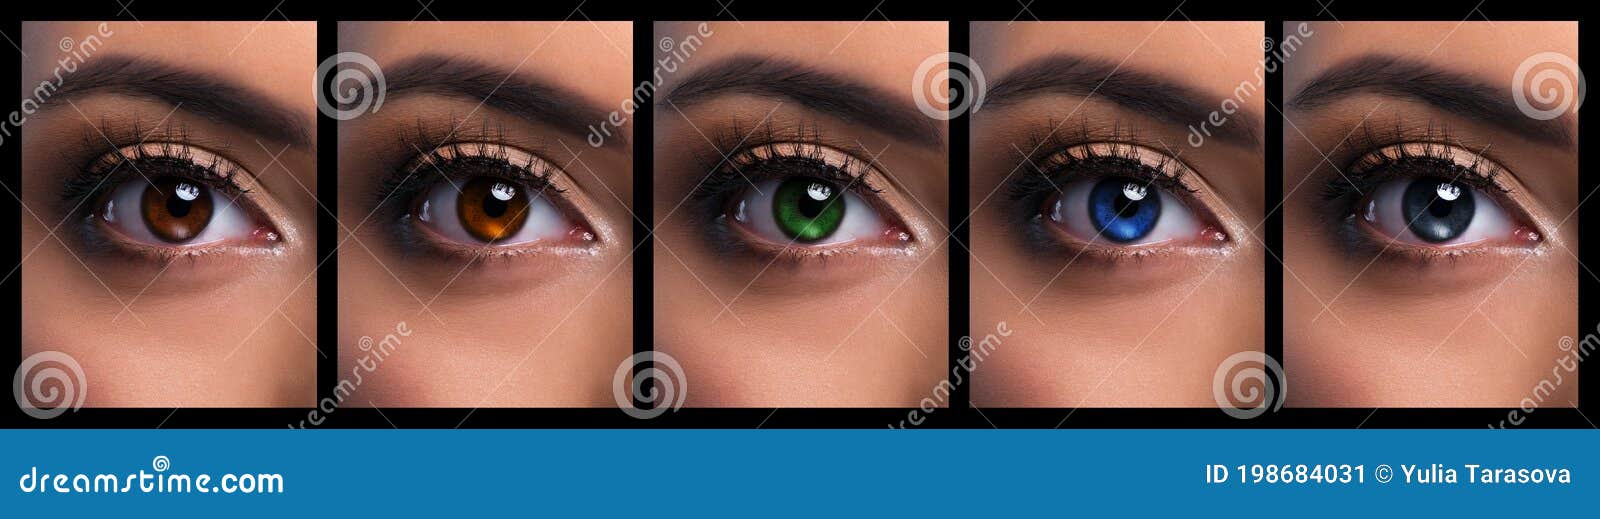 Stellen Sie Von Den Schönen Paare Augen Mit Unterschiedlichem Farbbraun Ein  Haselnuss, Blau, Grau Und Grün Stockbild - Bild von unterschiedlich,  anatomie: 198684031